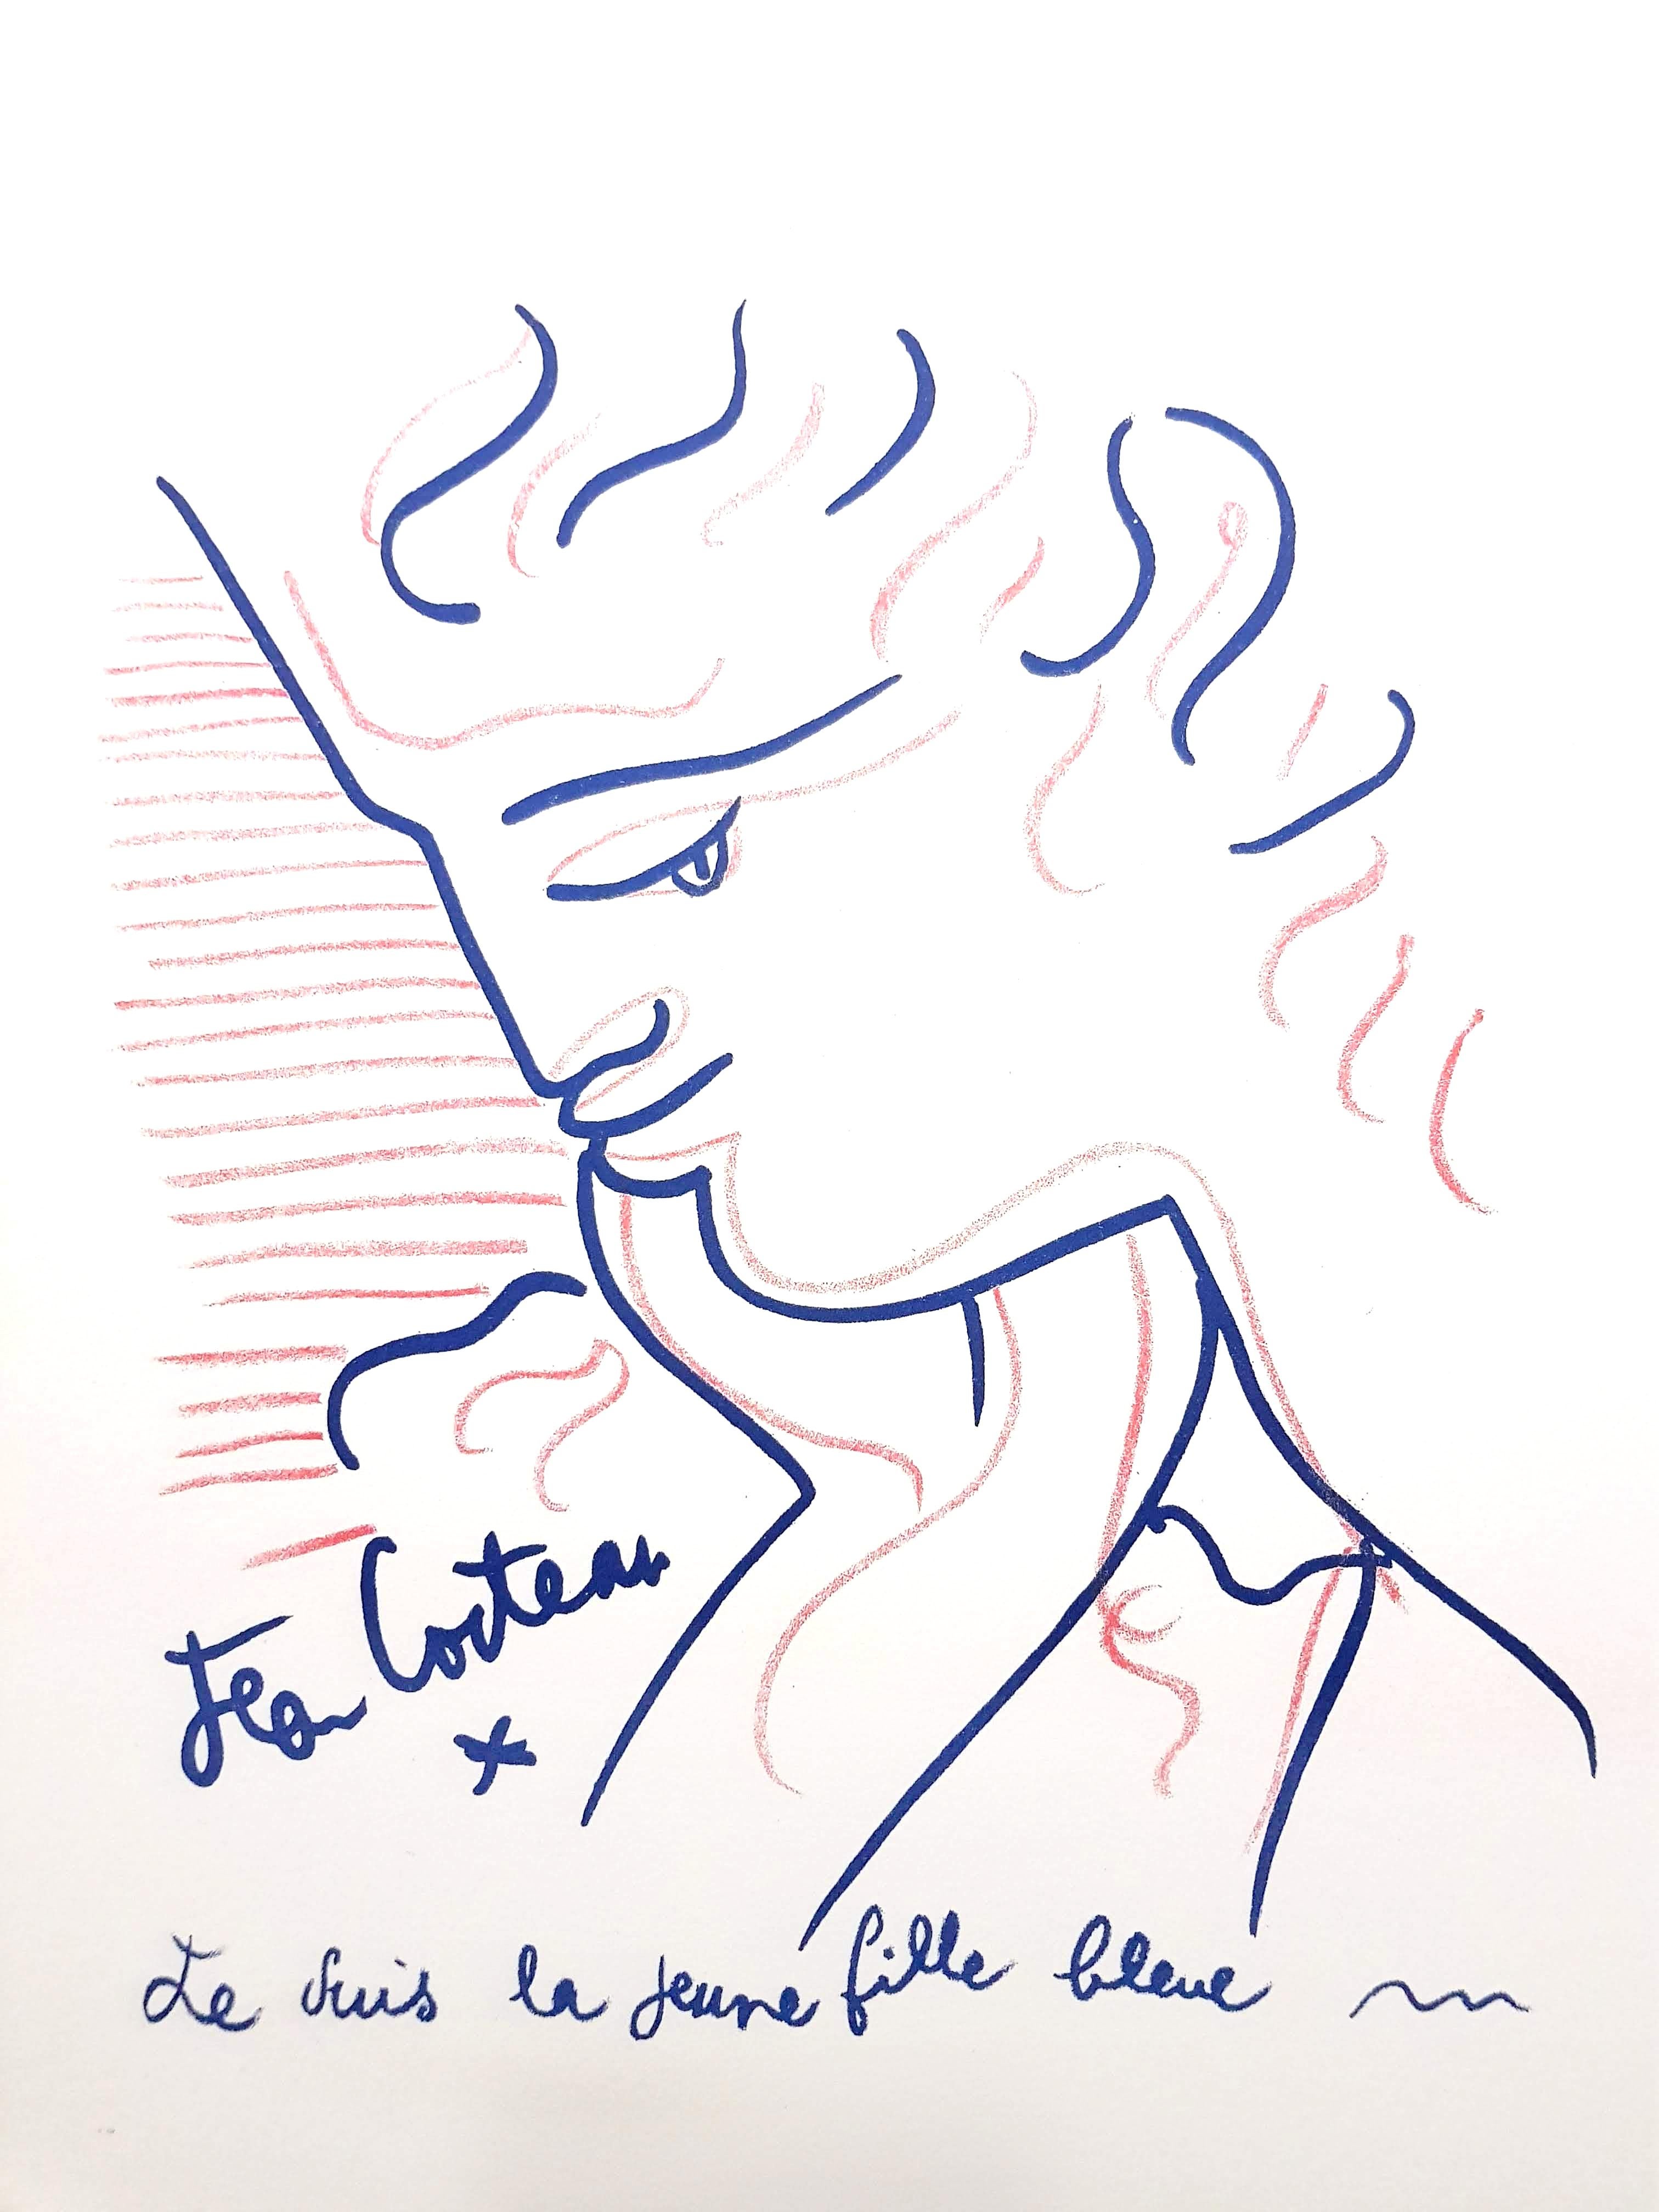 Lithographie originale de Jean Cocteau
Titre : Blue Lady 
Signé dans la plaque
Dimensions : 32 x 25,5 cm
Edition : 200
1959
Editeur : Bibliophiles Du Palais
Non numéroté tel que publié